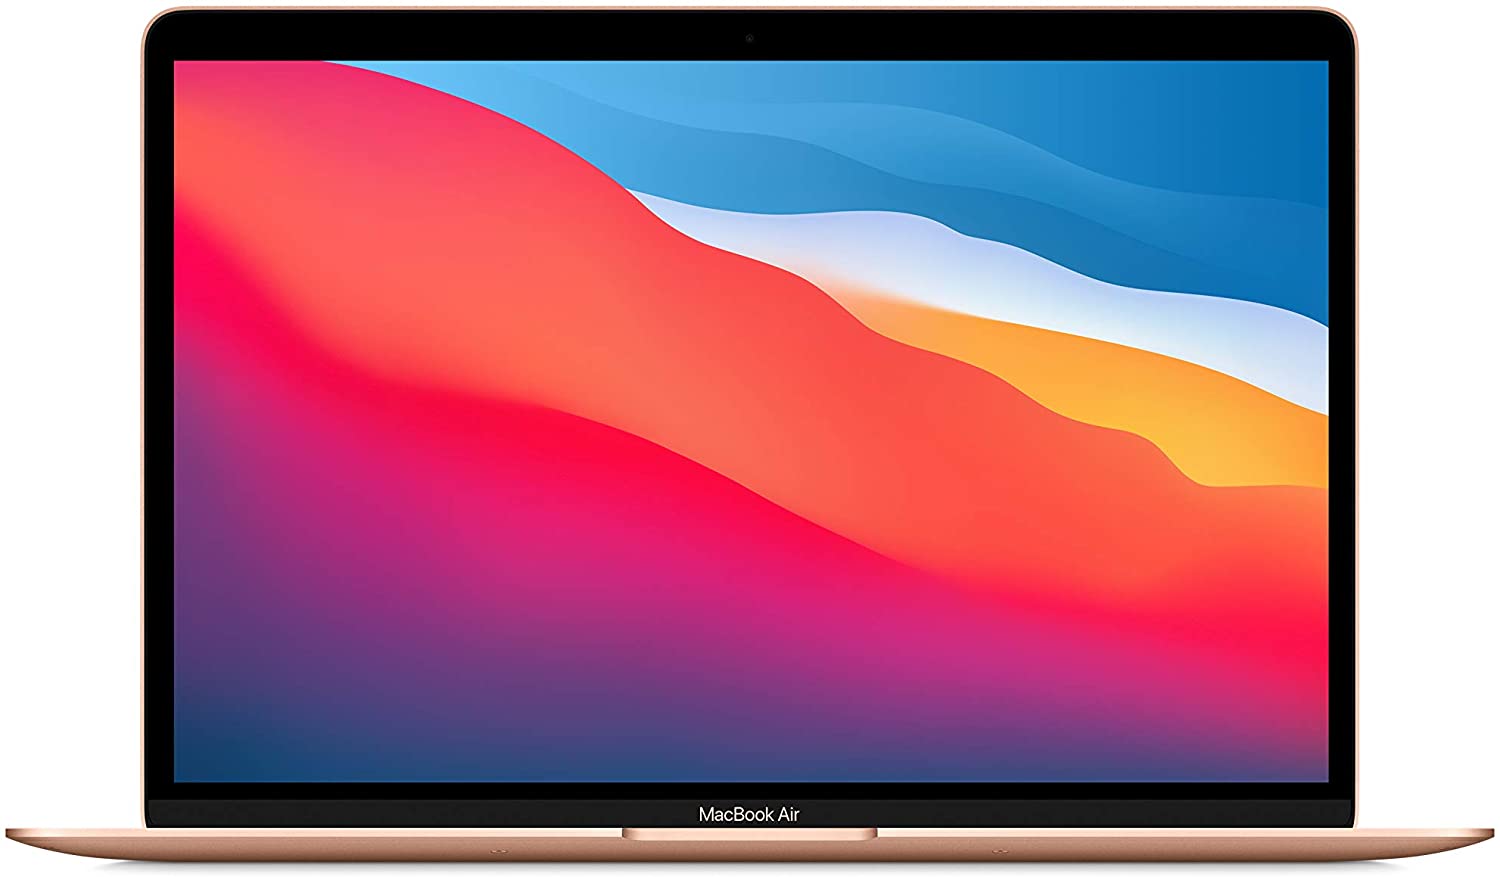 Apple - Best laptop for illustrator